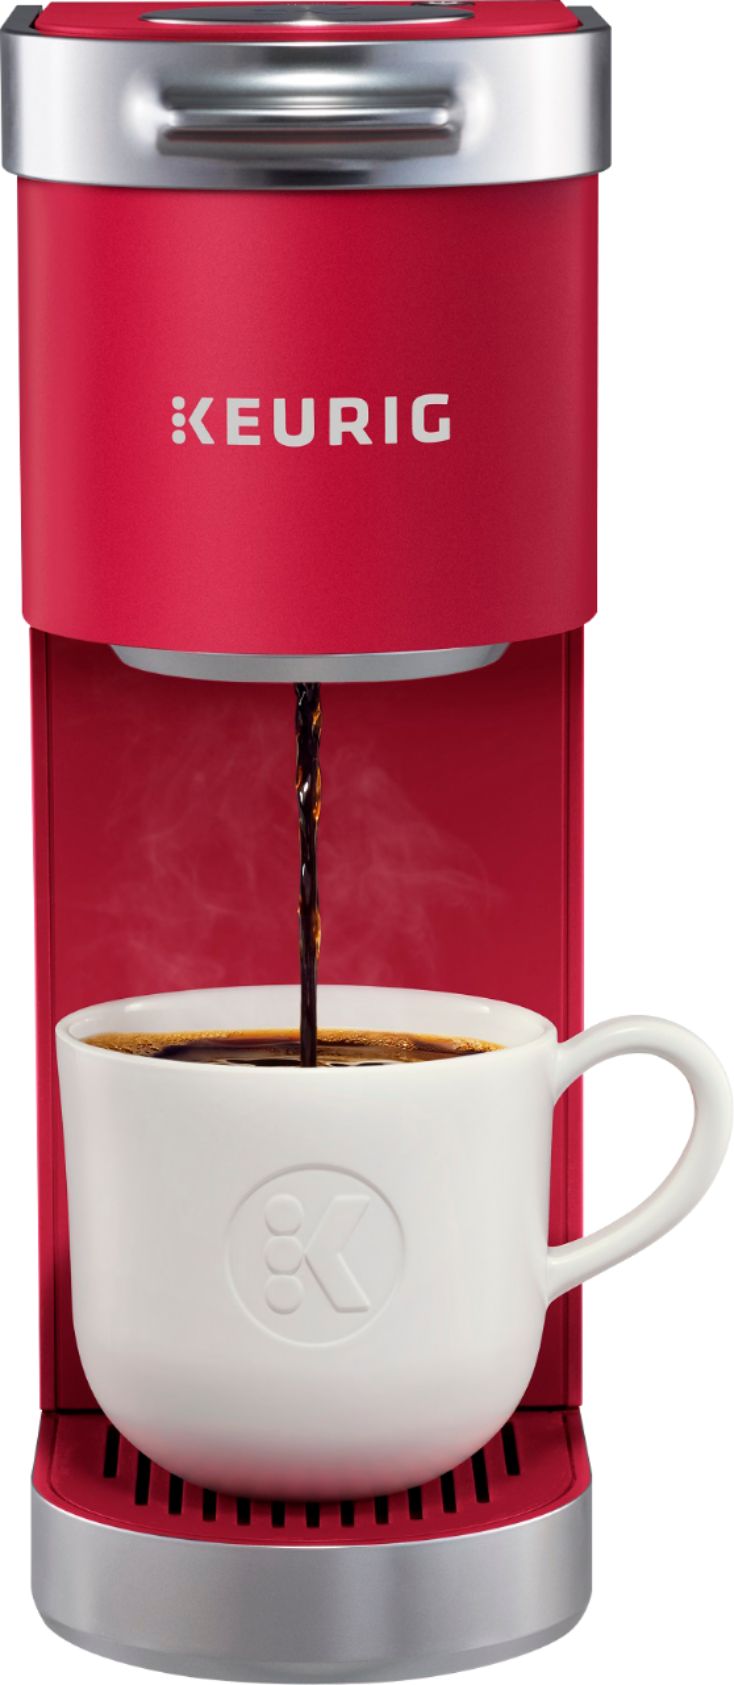 Keurig Dual Coffee Maker for Sale in Las Vegas, NV - OfferUp